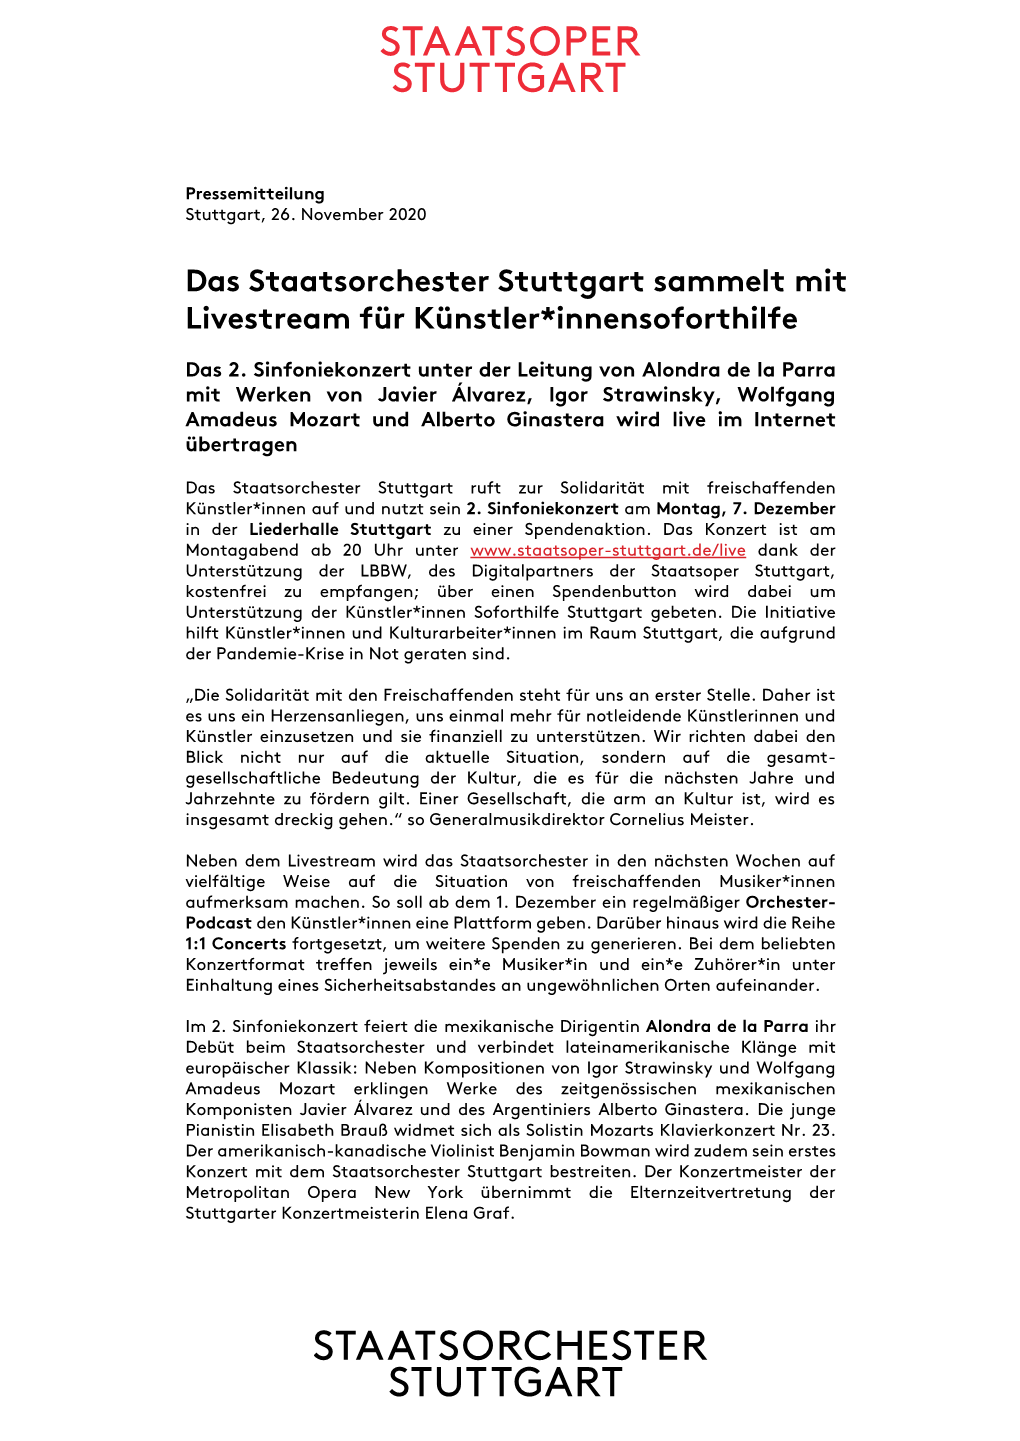 Das Staatsorchester Stuttgart Sammelt Mit Livestream Für Künstler*Innensoforthilfe